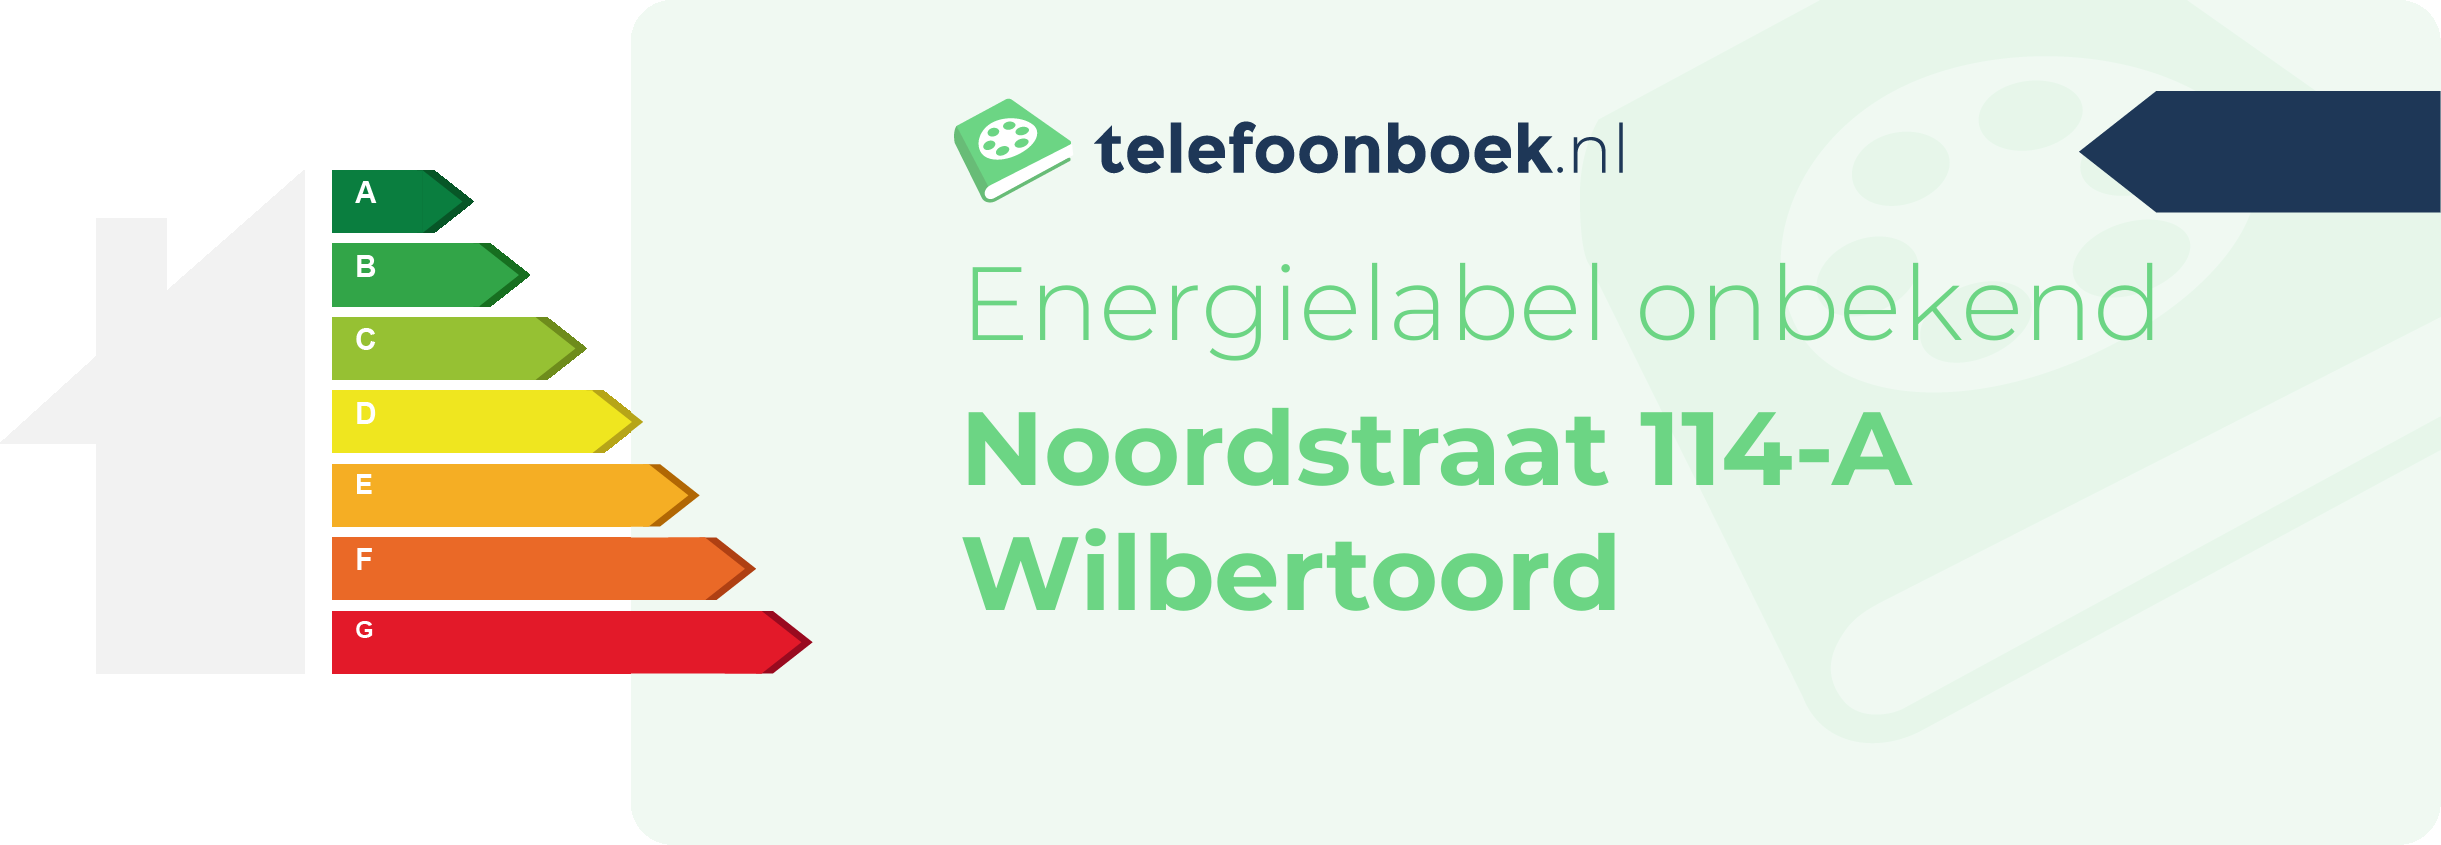 Energielabel Noordstraat 114-A Wilbertoord